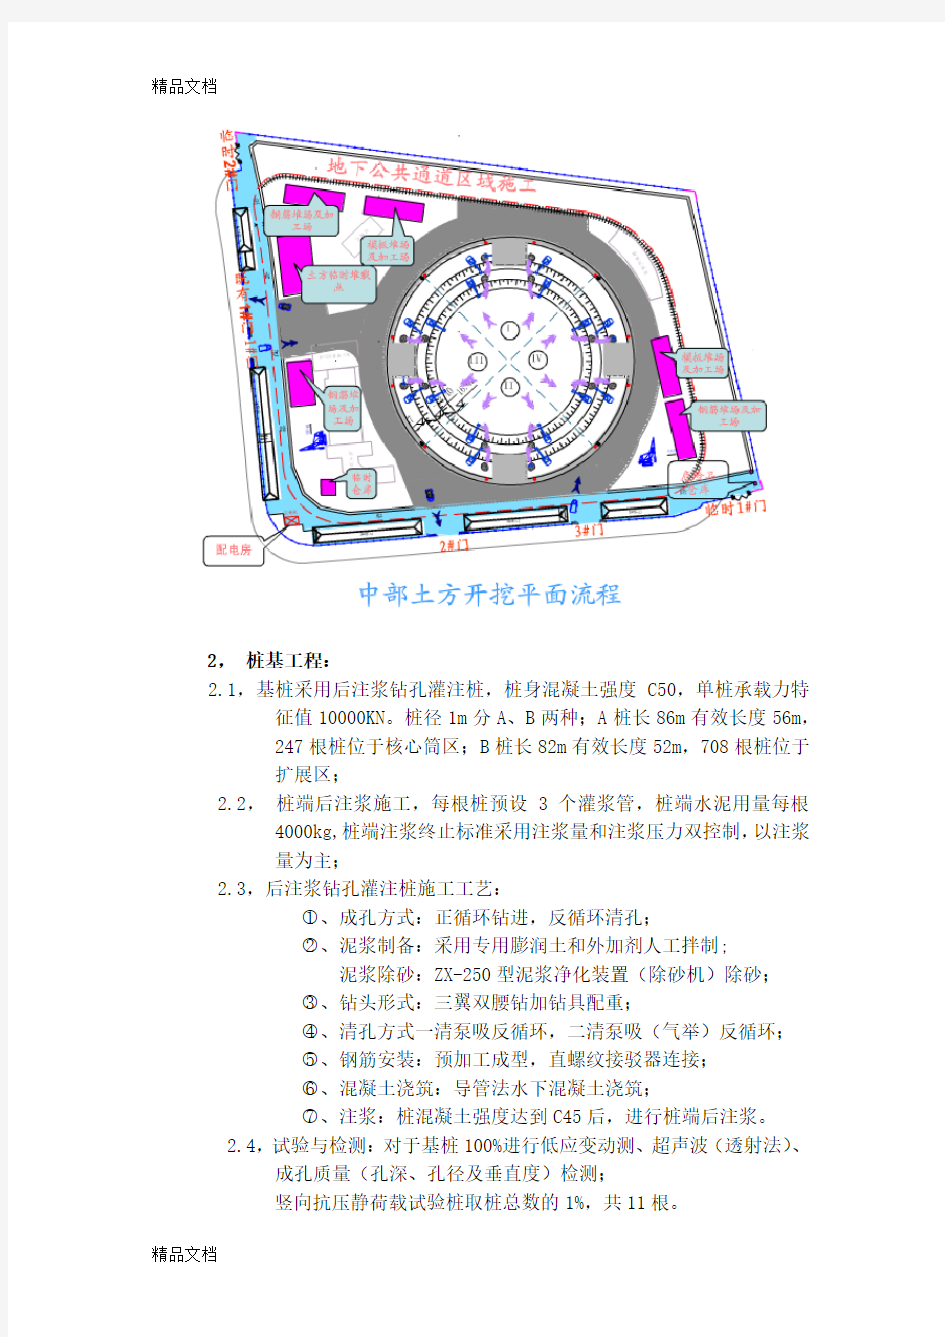 最新超级工程--上海中心大厦施工技术解读资料